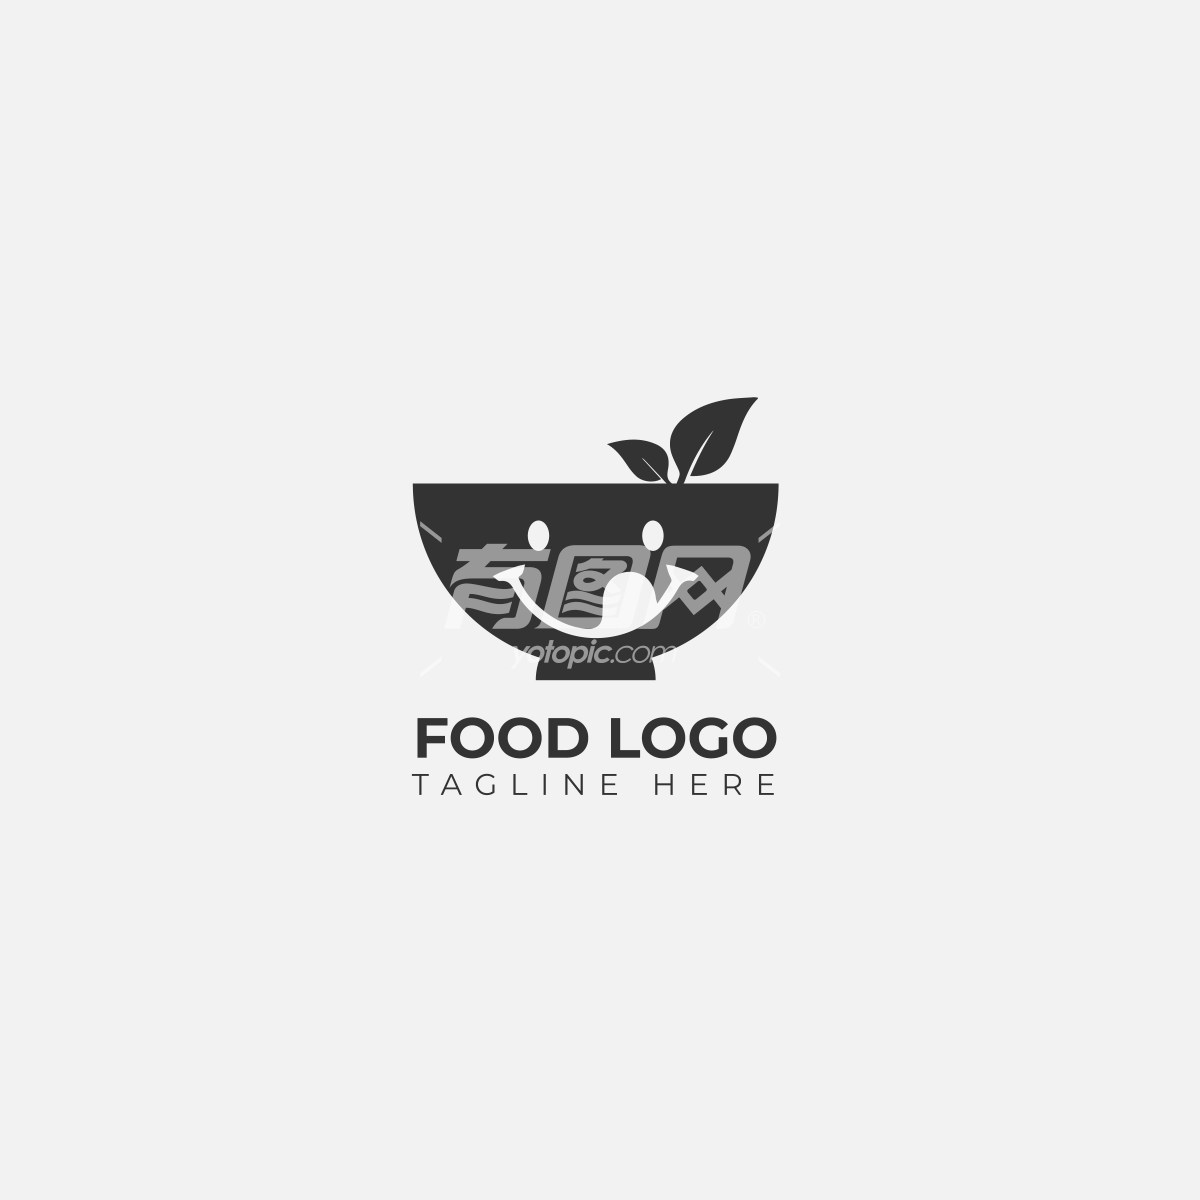 创意食品标志设计